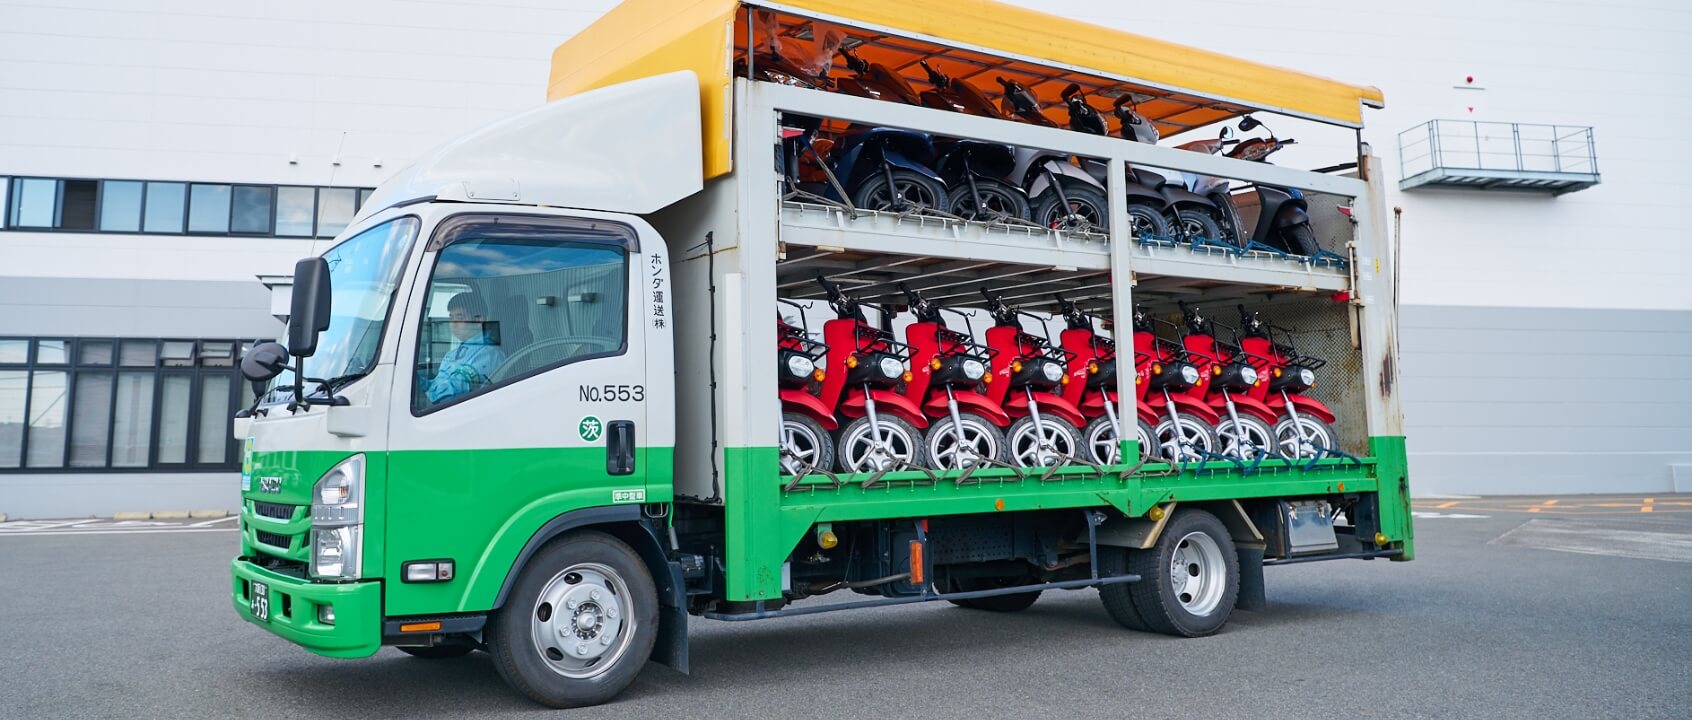 自動車輸送と並ぶホンダ運送の基幹業務